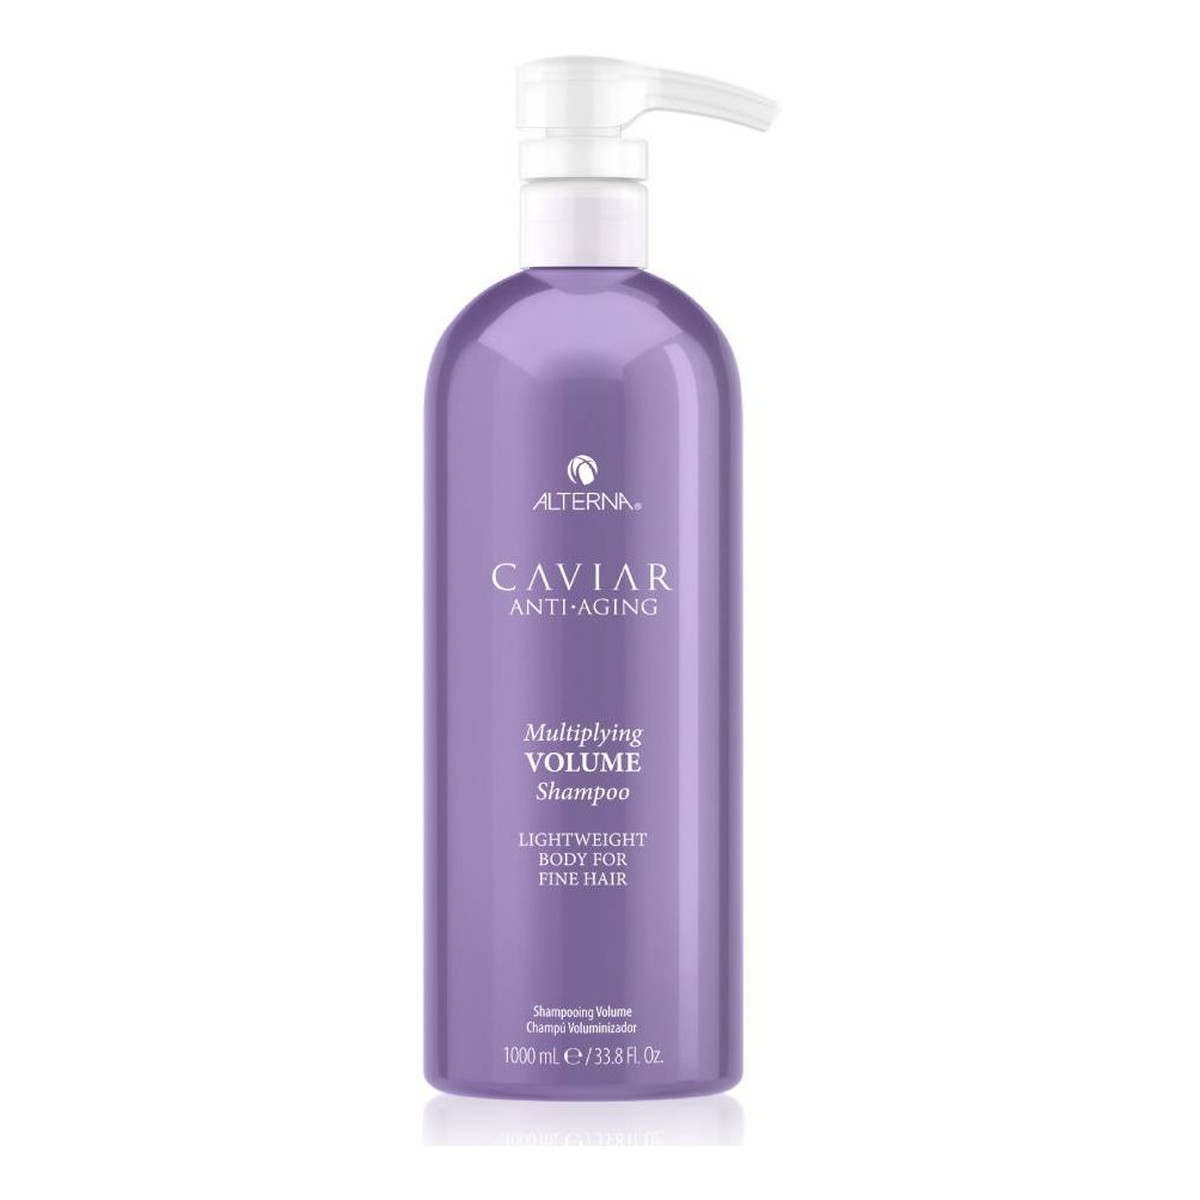 Alterna Caviar anti-aging multiplying volume shampoo szampon dodający objętości 1000ml